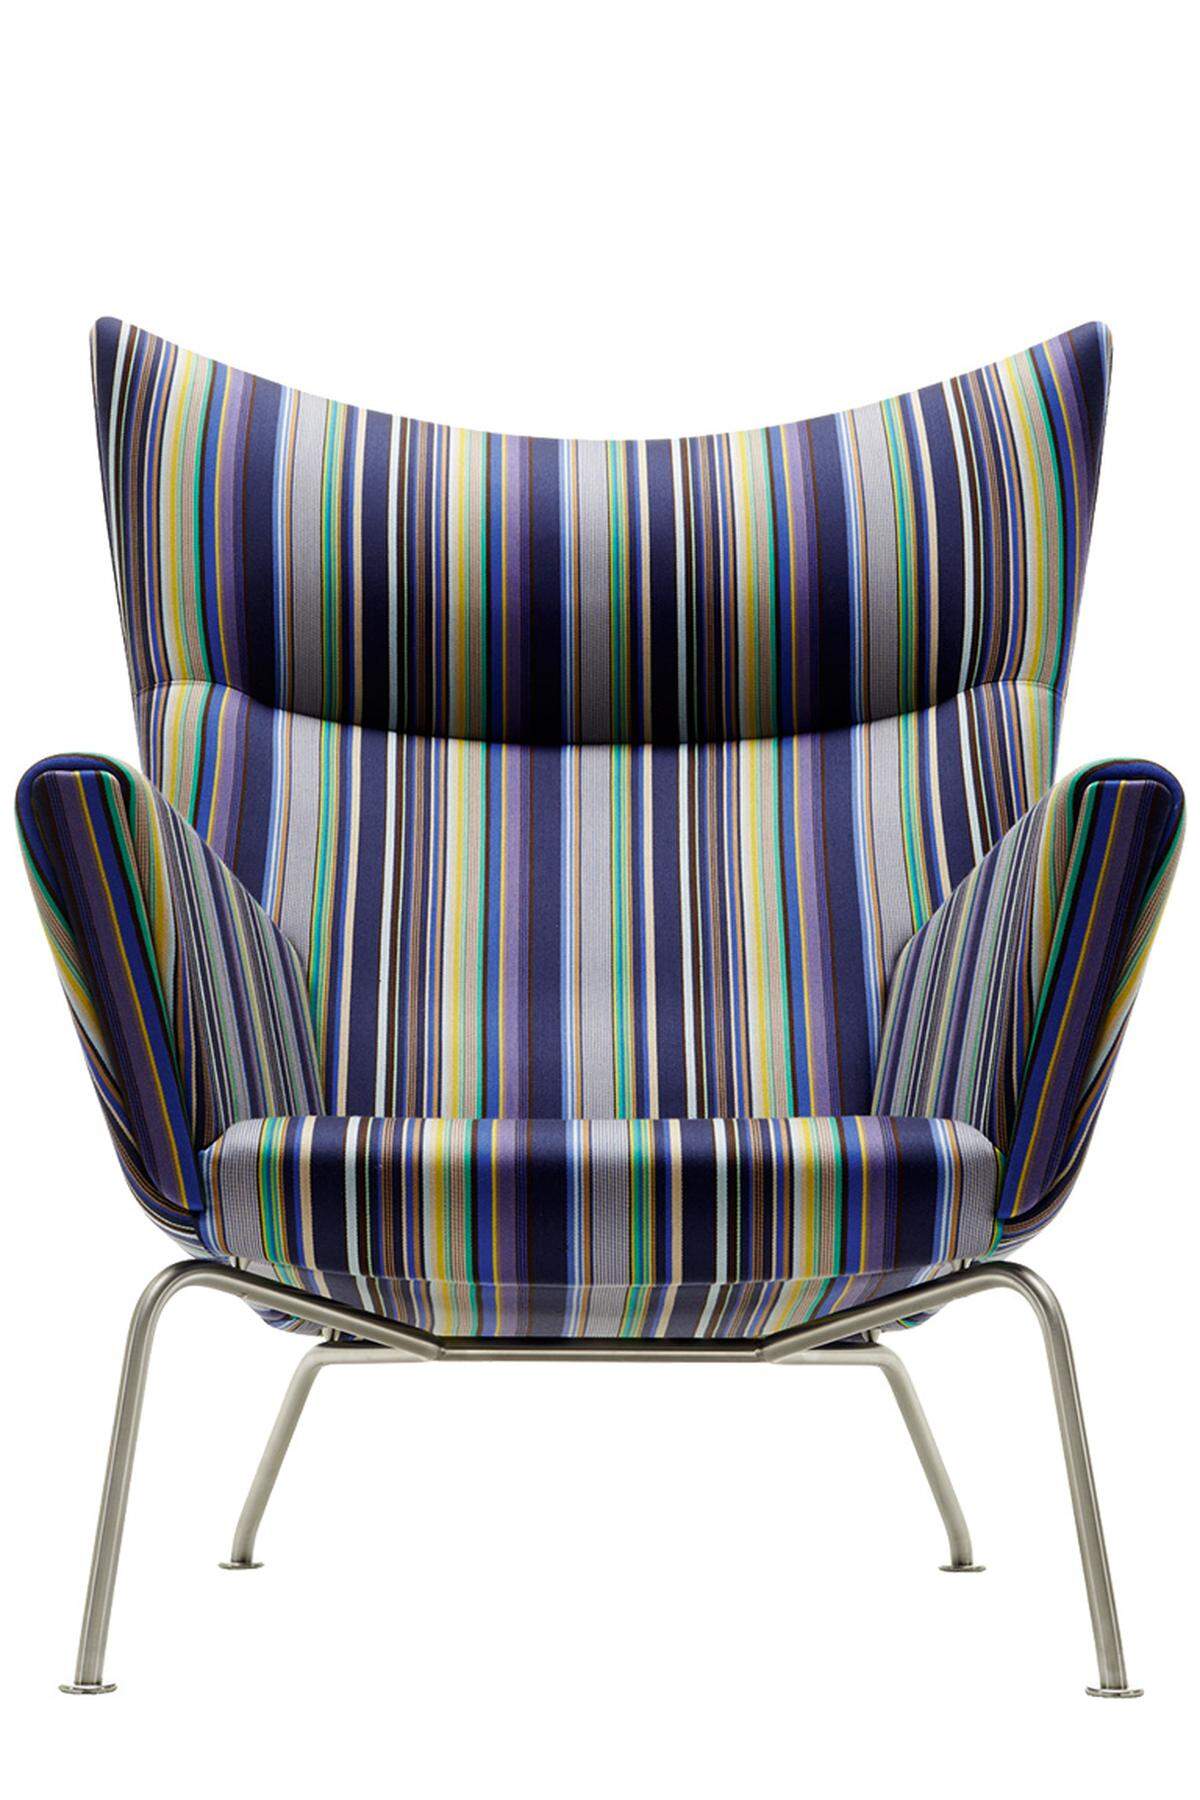 Der „Wing Chair“ („CH445“) von Carl Hansen, eingefärbt von Paul Smith.